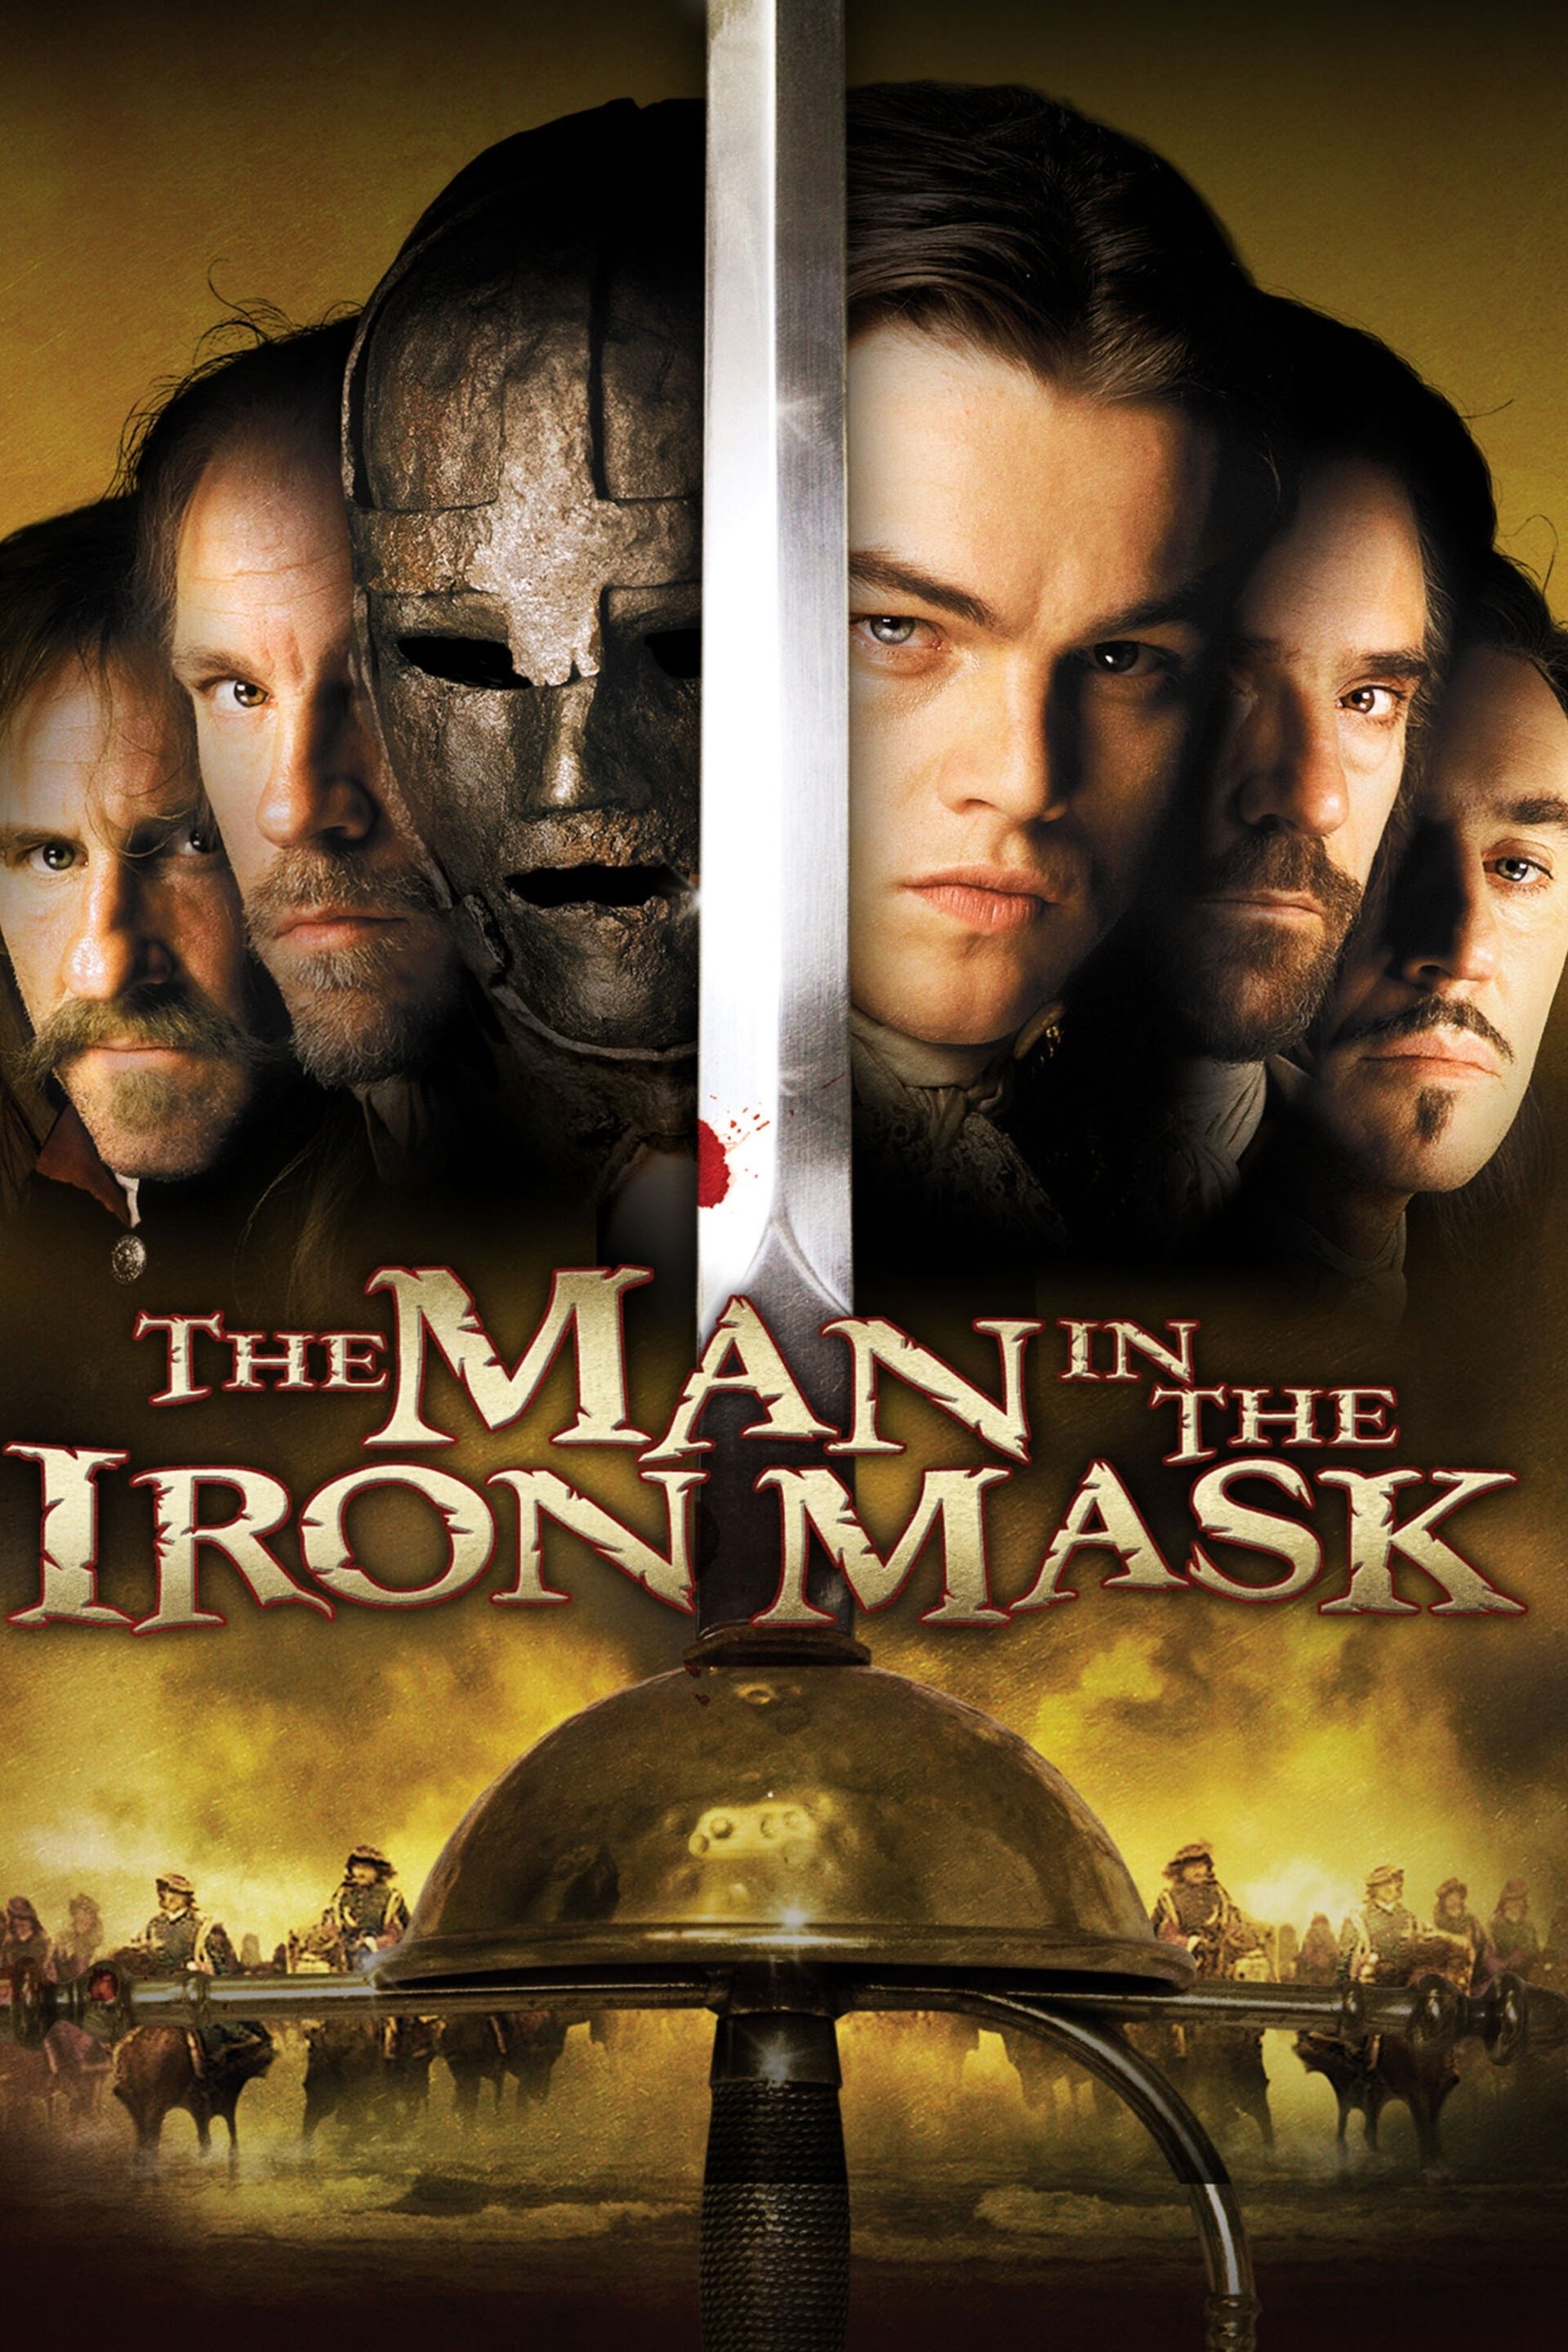 The Iron Mask: primeiro trailer do filme mostra luta de